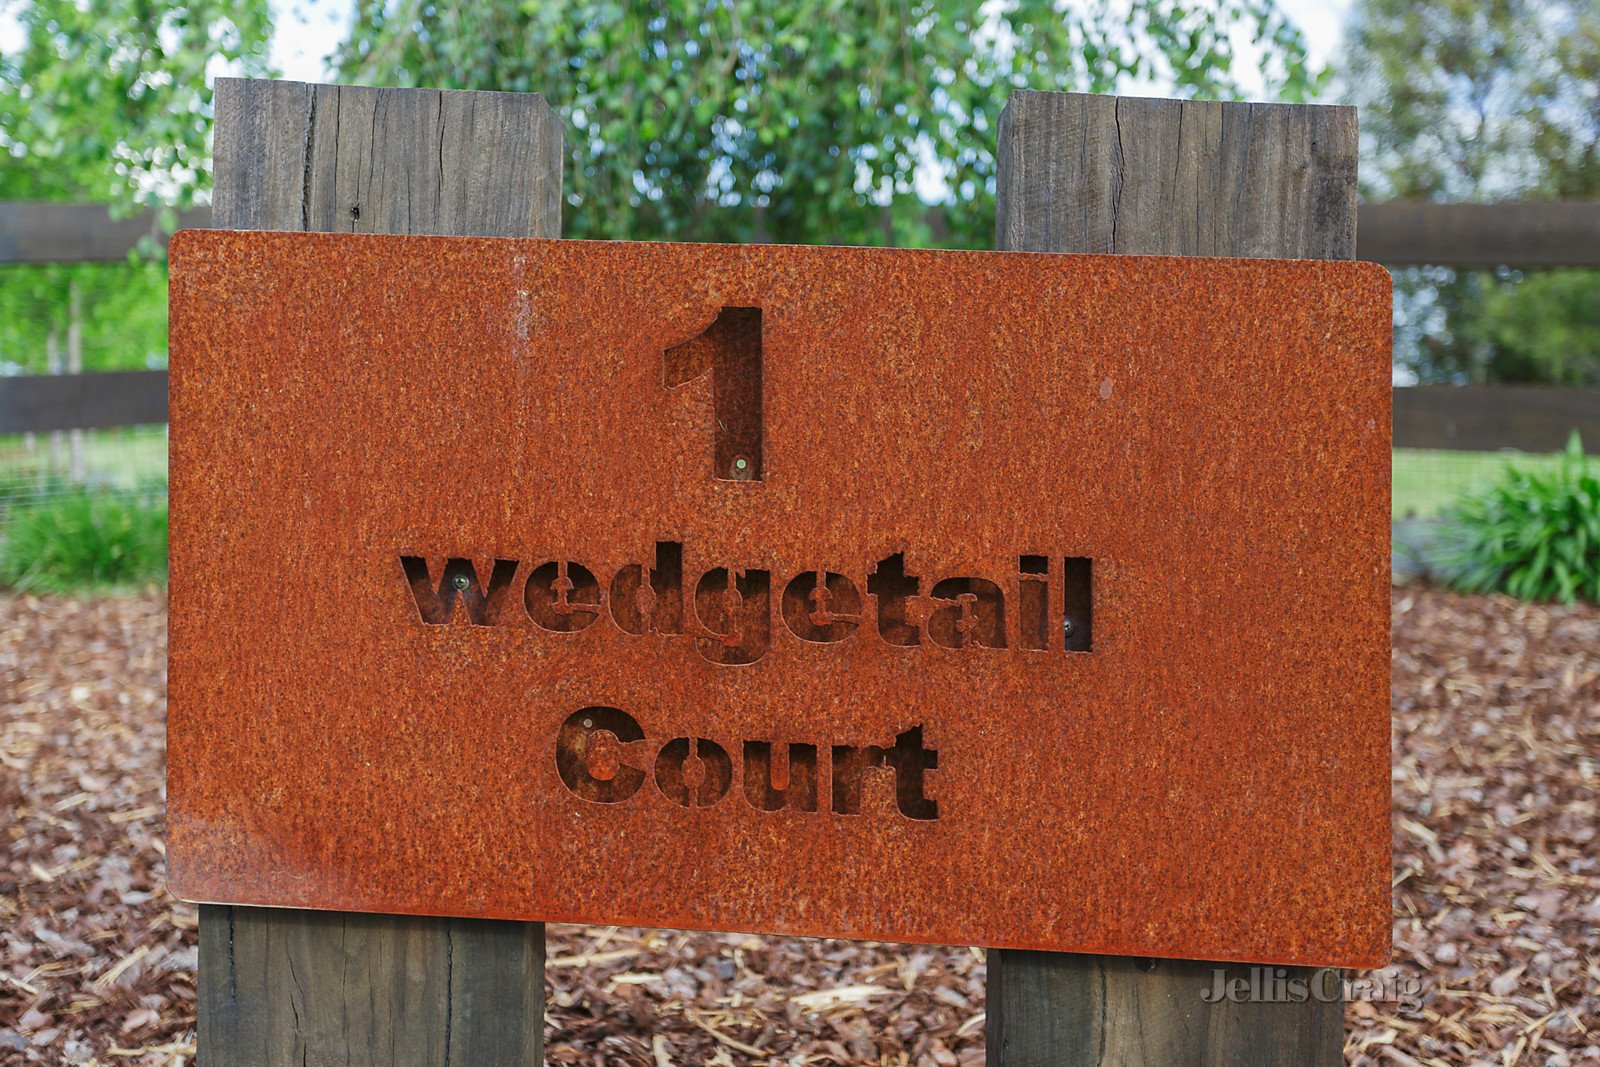 1 Wedge Tail Court, Kangaroo Ground image 20